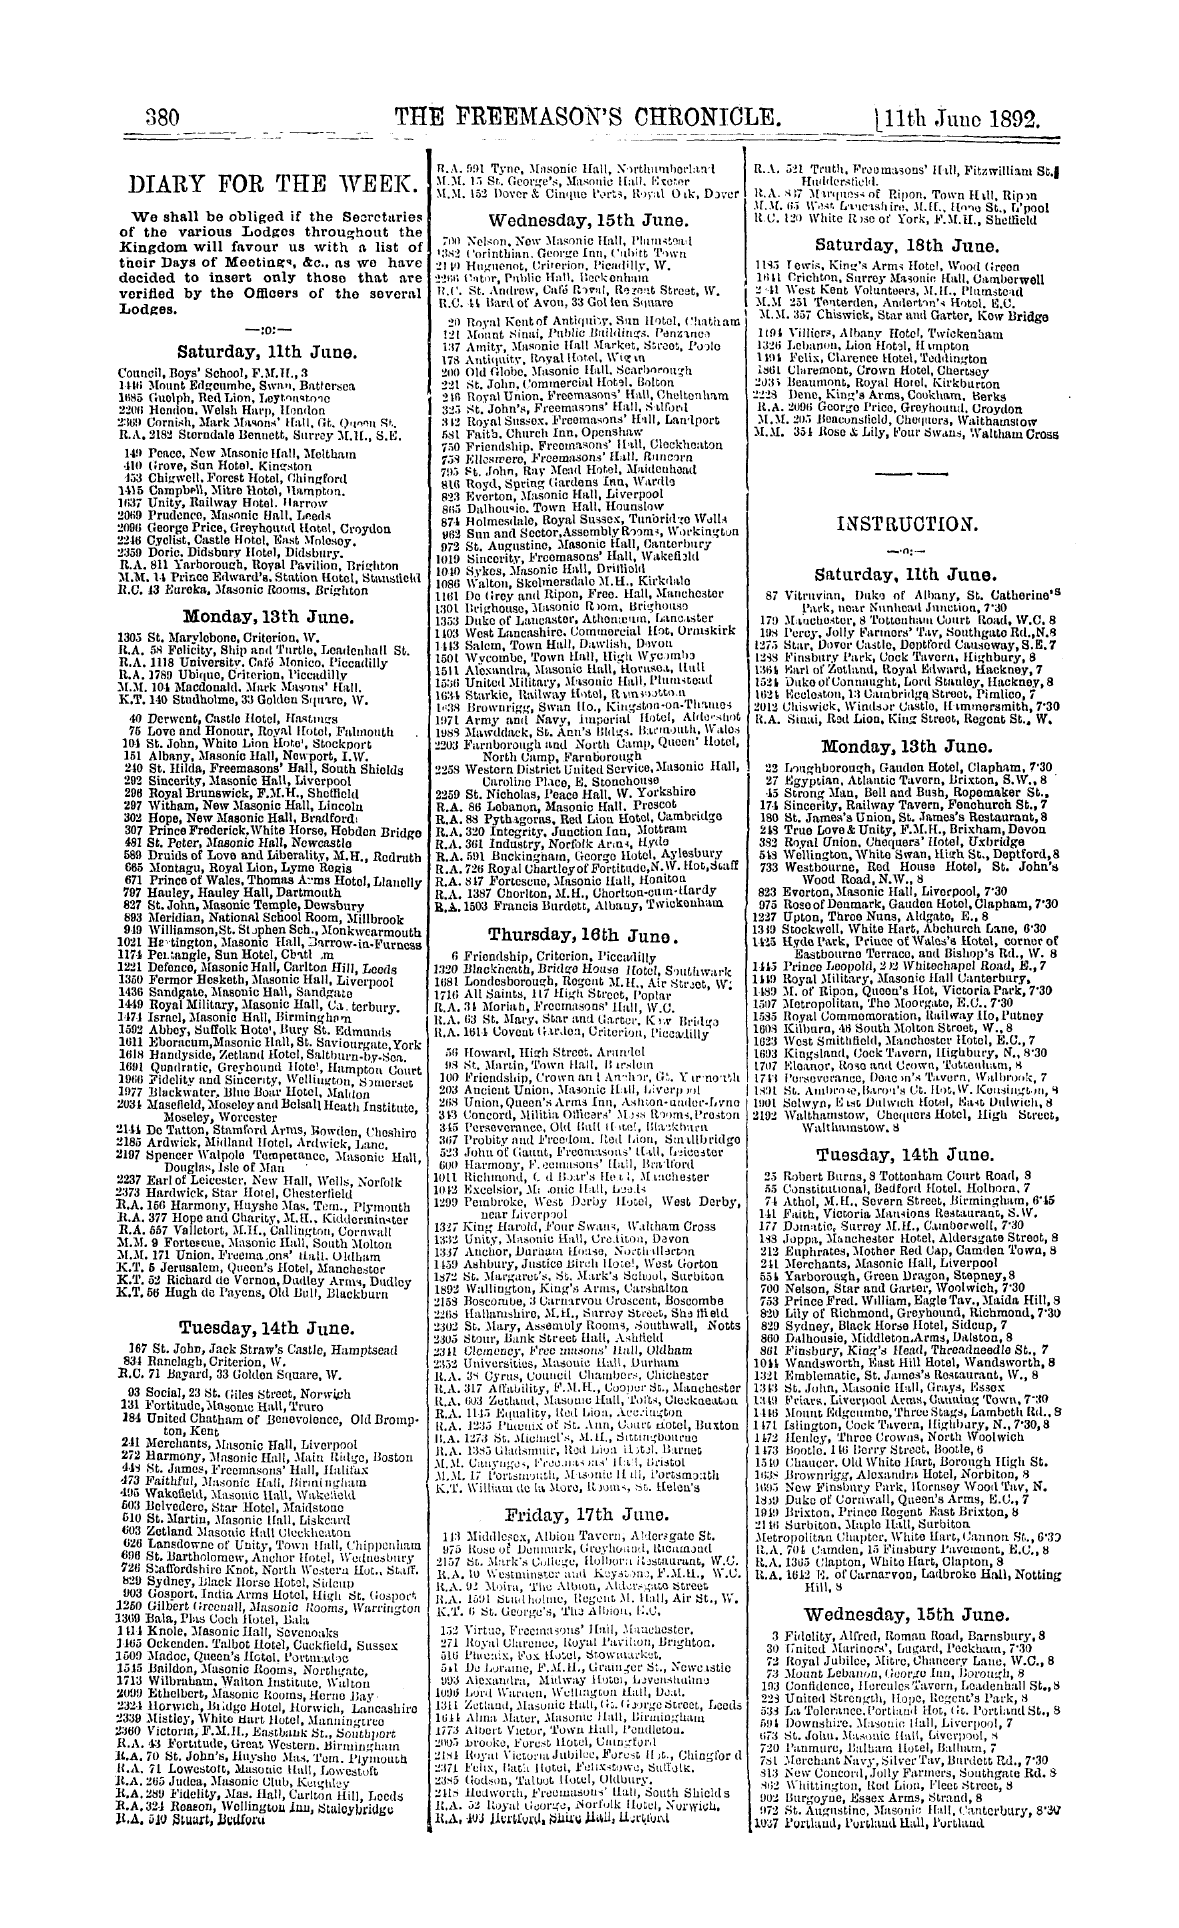 The Freemason's Chronicle: 1892-06-11 - Instruction.